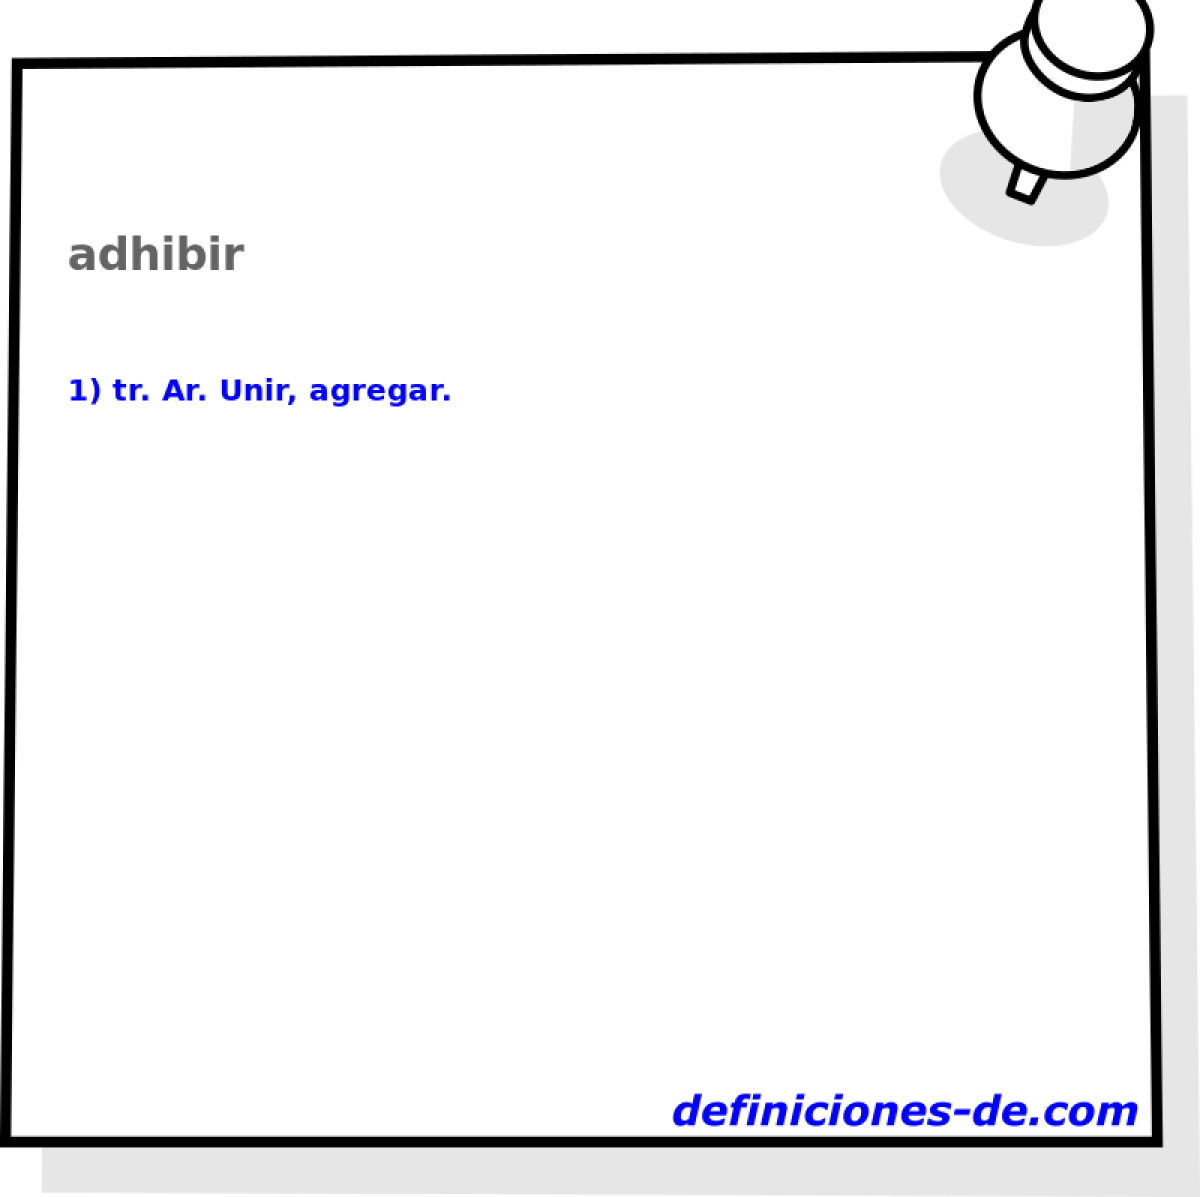 adhibir 